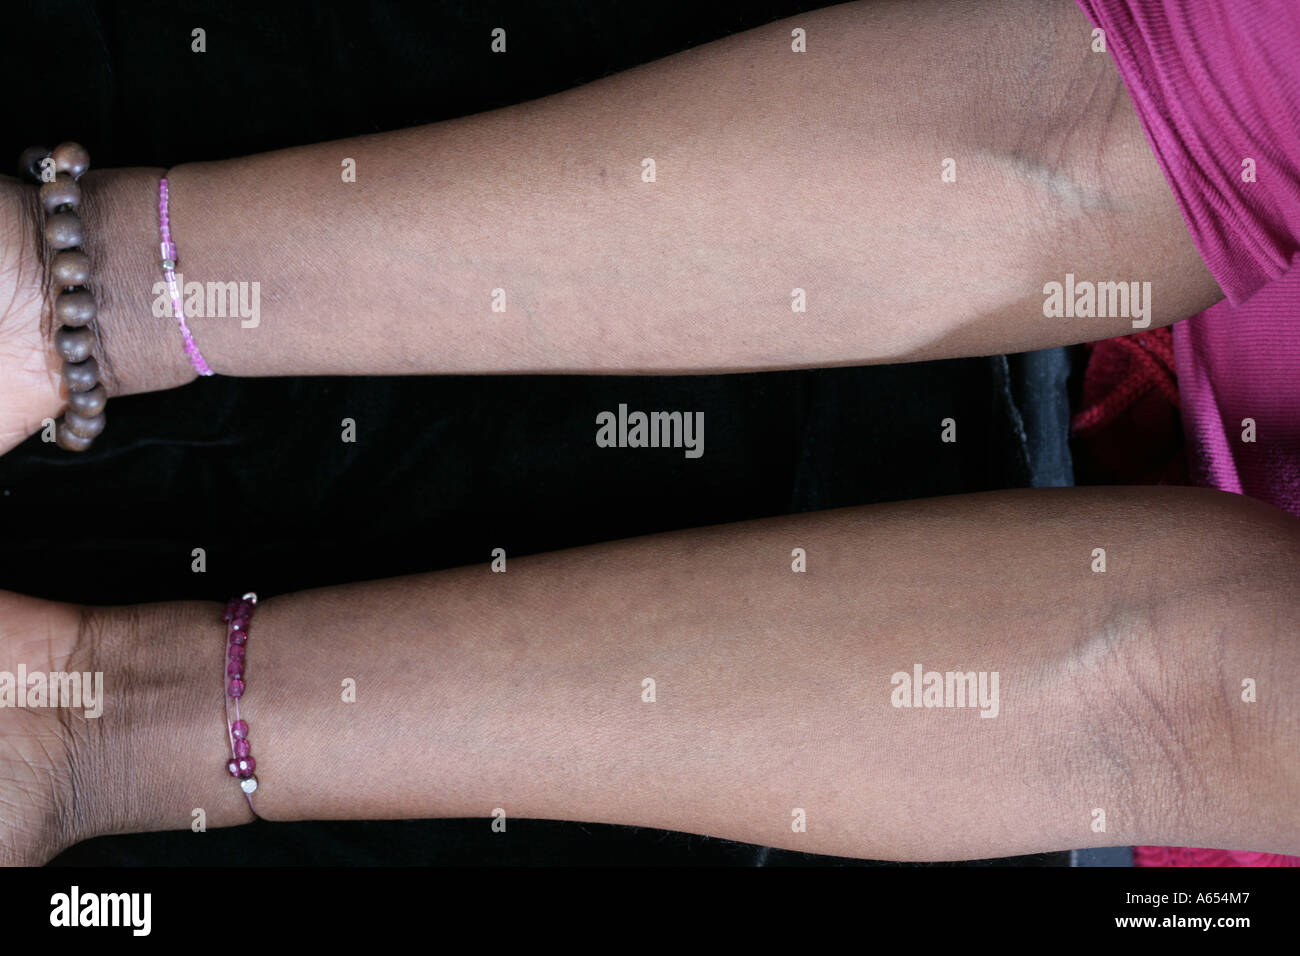 African American Woman montre ses bras avec une affection chronique de la  décoloration de la peau Photo Stock - Alamy